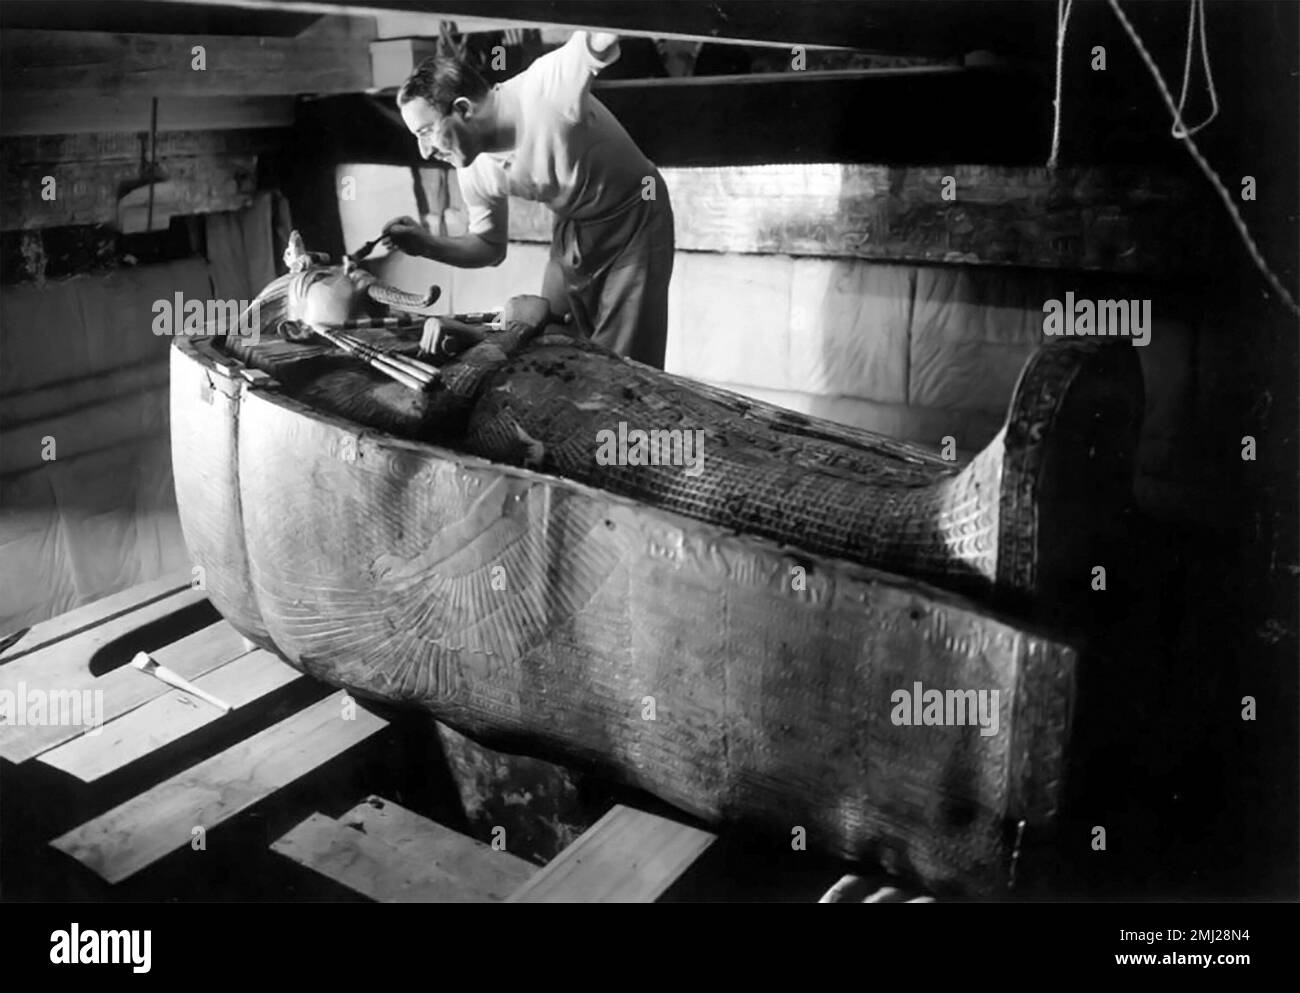 Tombeau de Toutankhamon. Howard carter examinant le sarcophage du tombeau du roi Toutankhamon, Louxor, Égypte. Photographie prise vers 1925 par Harry Burton(1879-1940) Banque D'Images